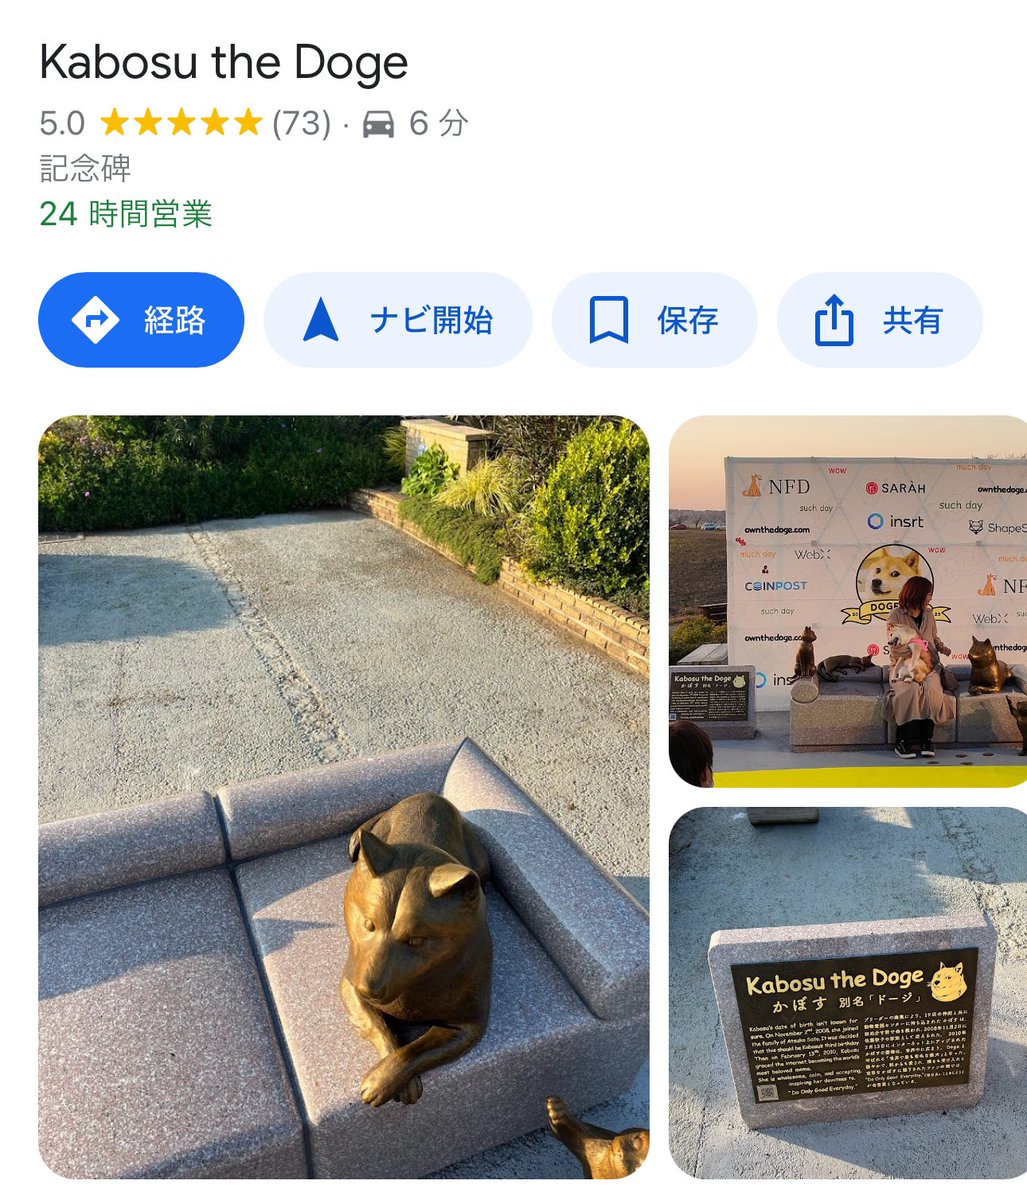 Google mapsで Kabosu the Dogeと検索すると かぼちゃんのモニュメントの位置が出ます😊 いったい誰がスポット登録してくださったのかしら❓ 感謝です💓